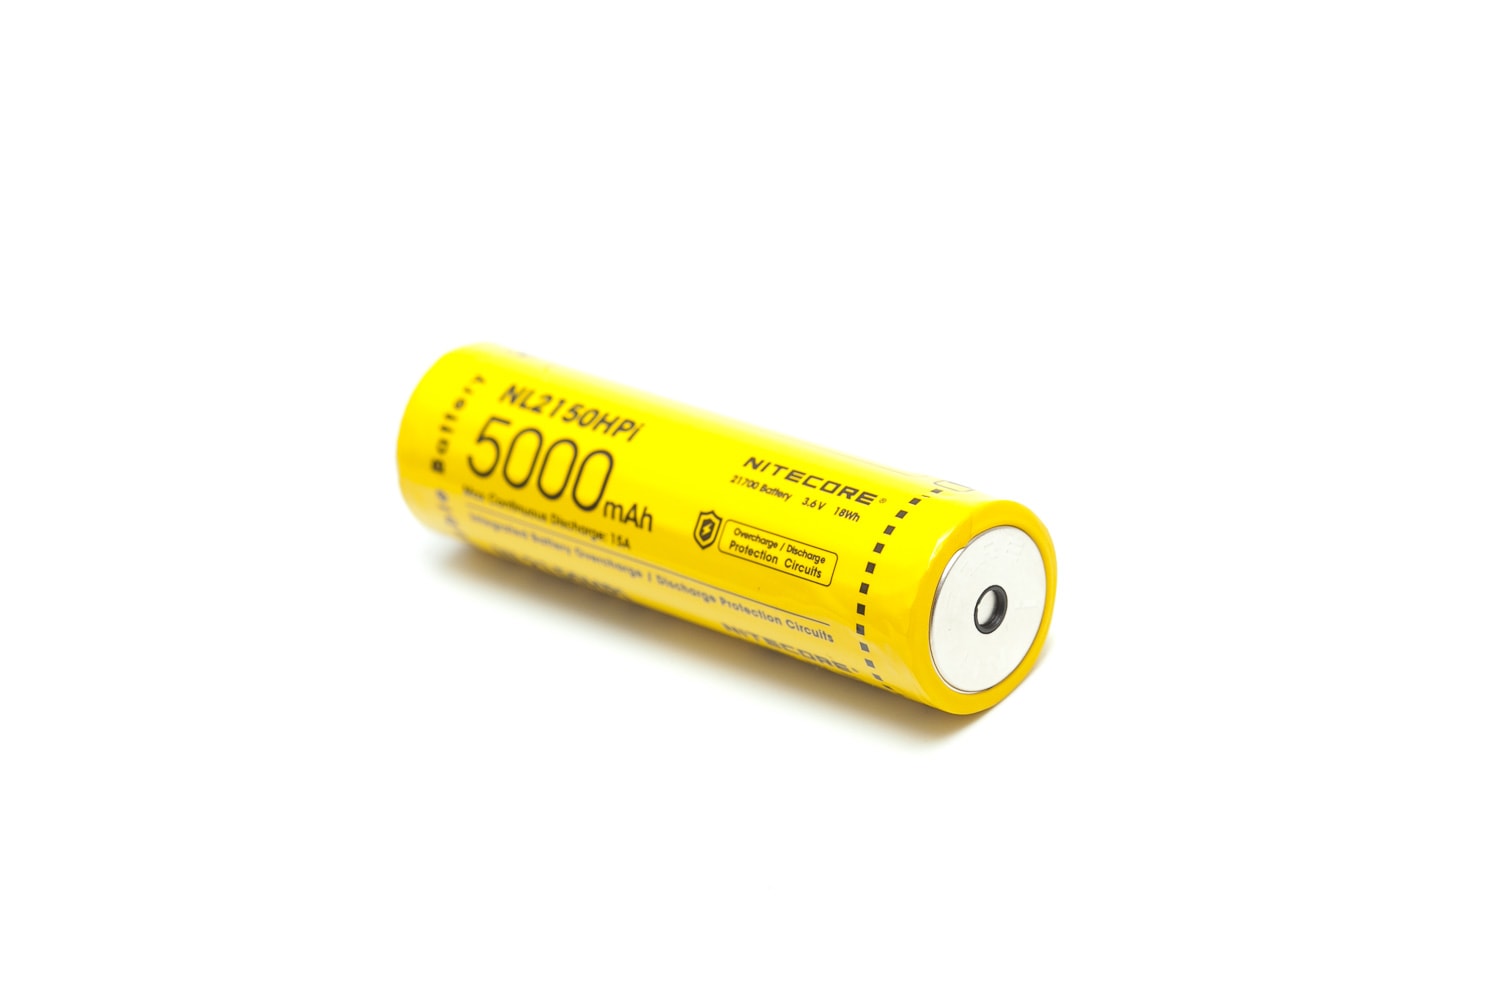 Nitecore NL2150HPi 5000mAh battery